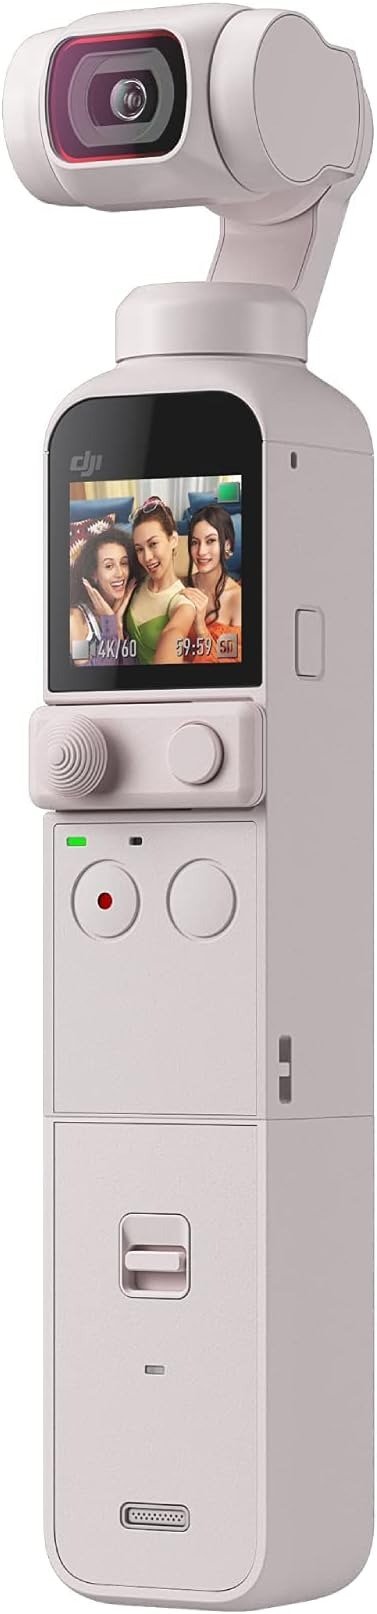 DJI Pocket 2手持相机